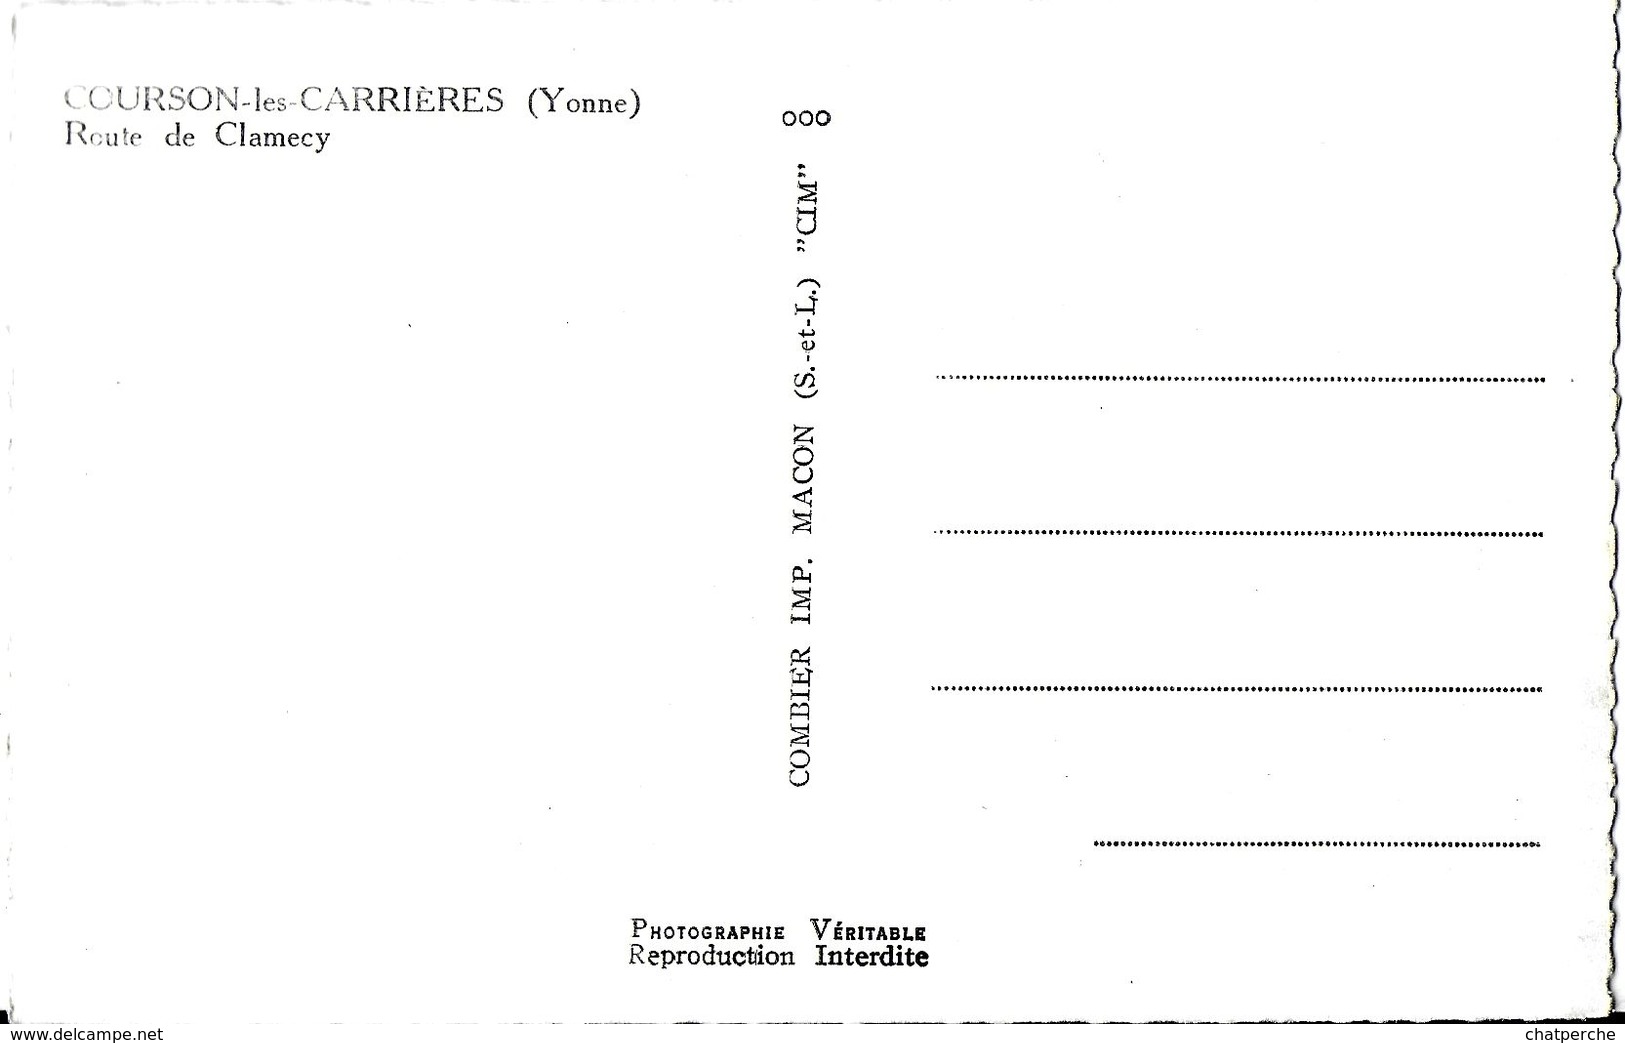 COURSON-LES-CARRIÈRES 89 YONNE ROUTE DE CLAMECY  EDIT. CIM  PULICITE FORVIL - Courson-les-Carrières